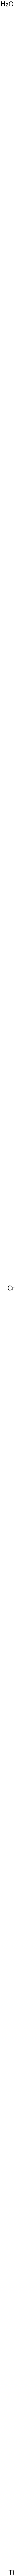 Chromium titanium oxide (Cr2TiO5) Structure